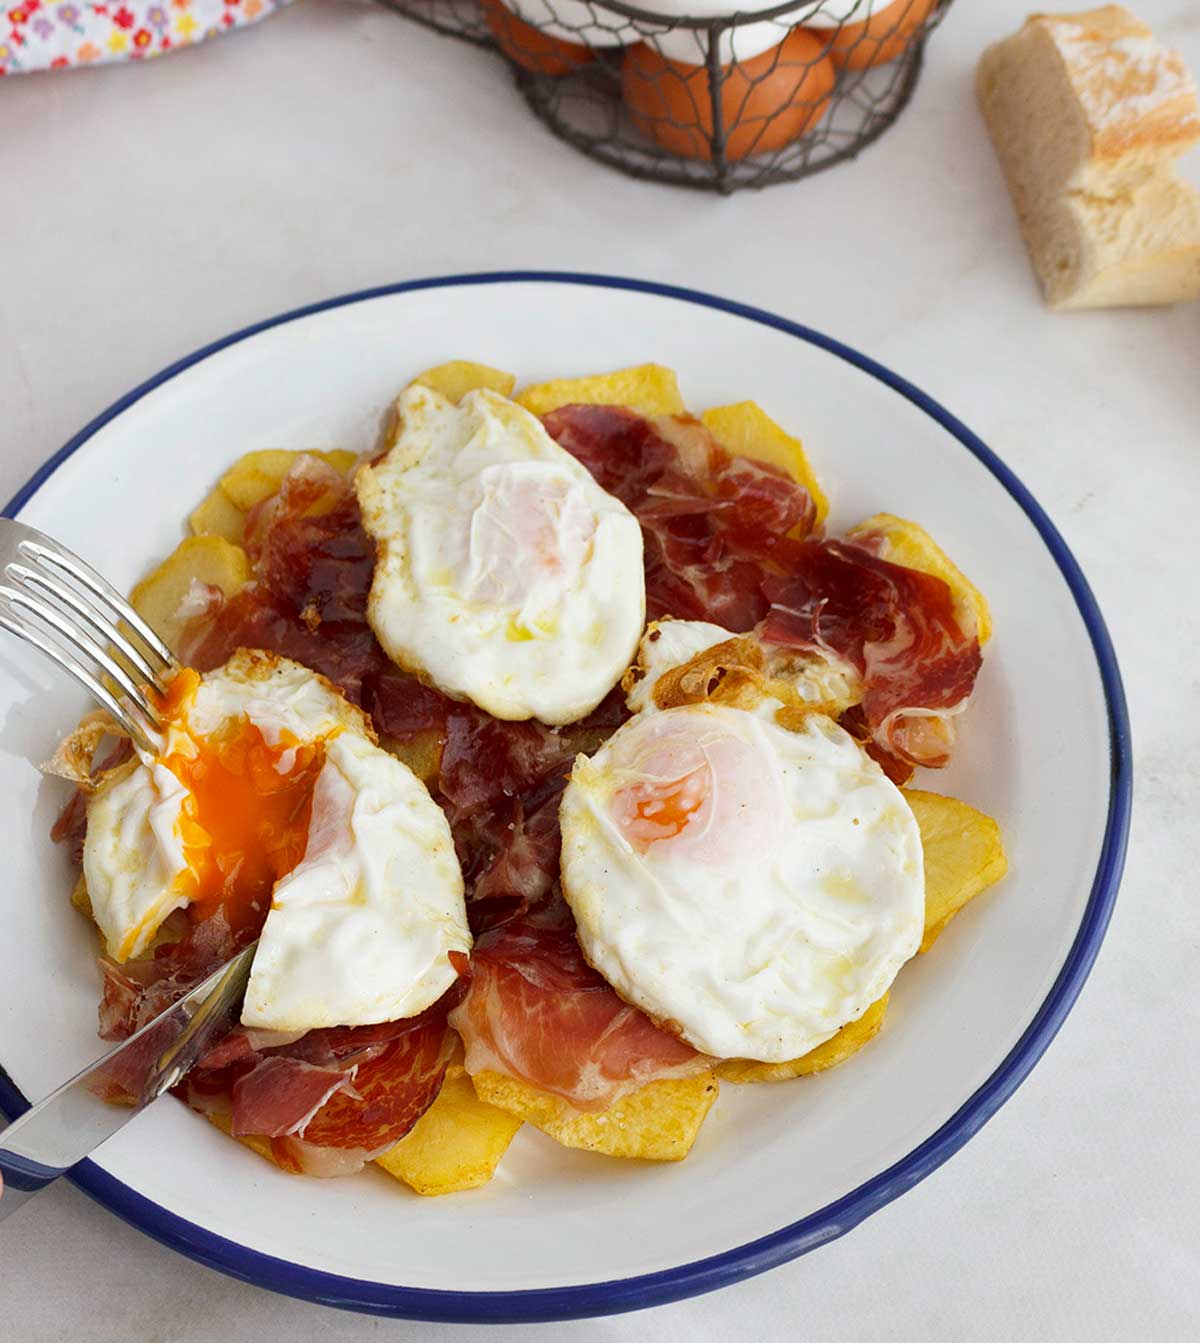 Huevos fritos en microondas, ¡fáciles, sanos y ricos! - PequeRecetas